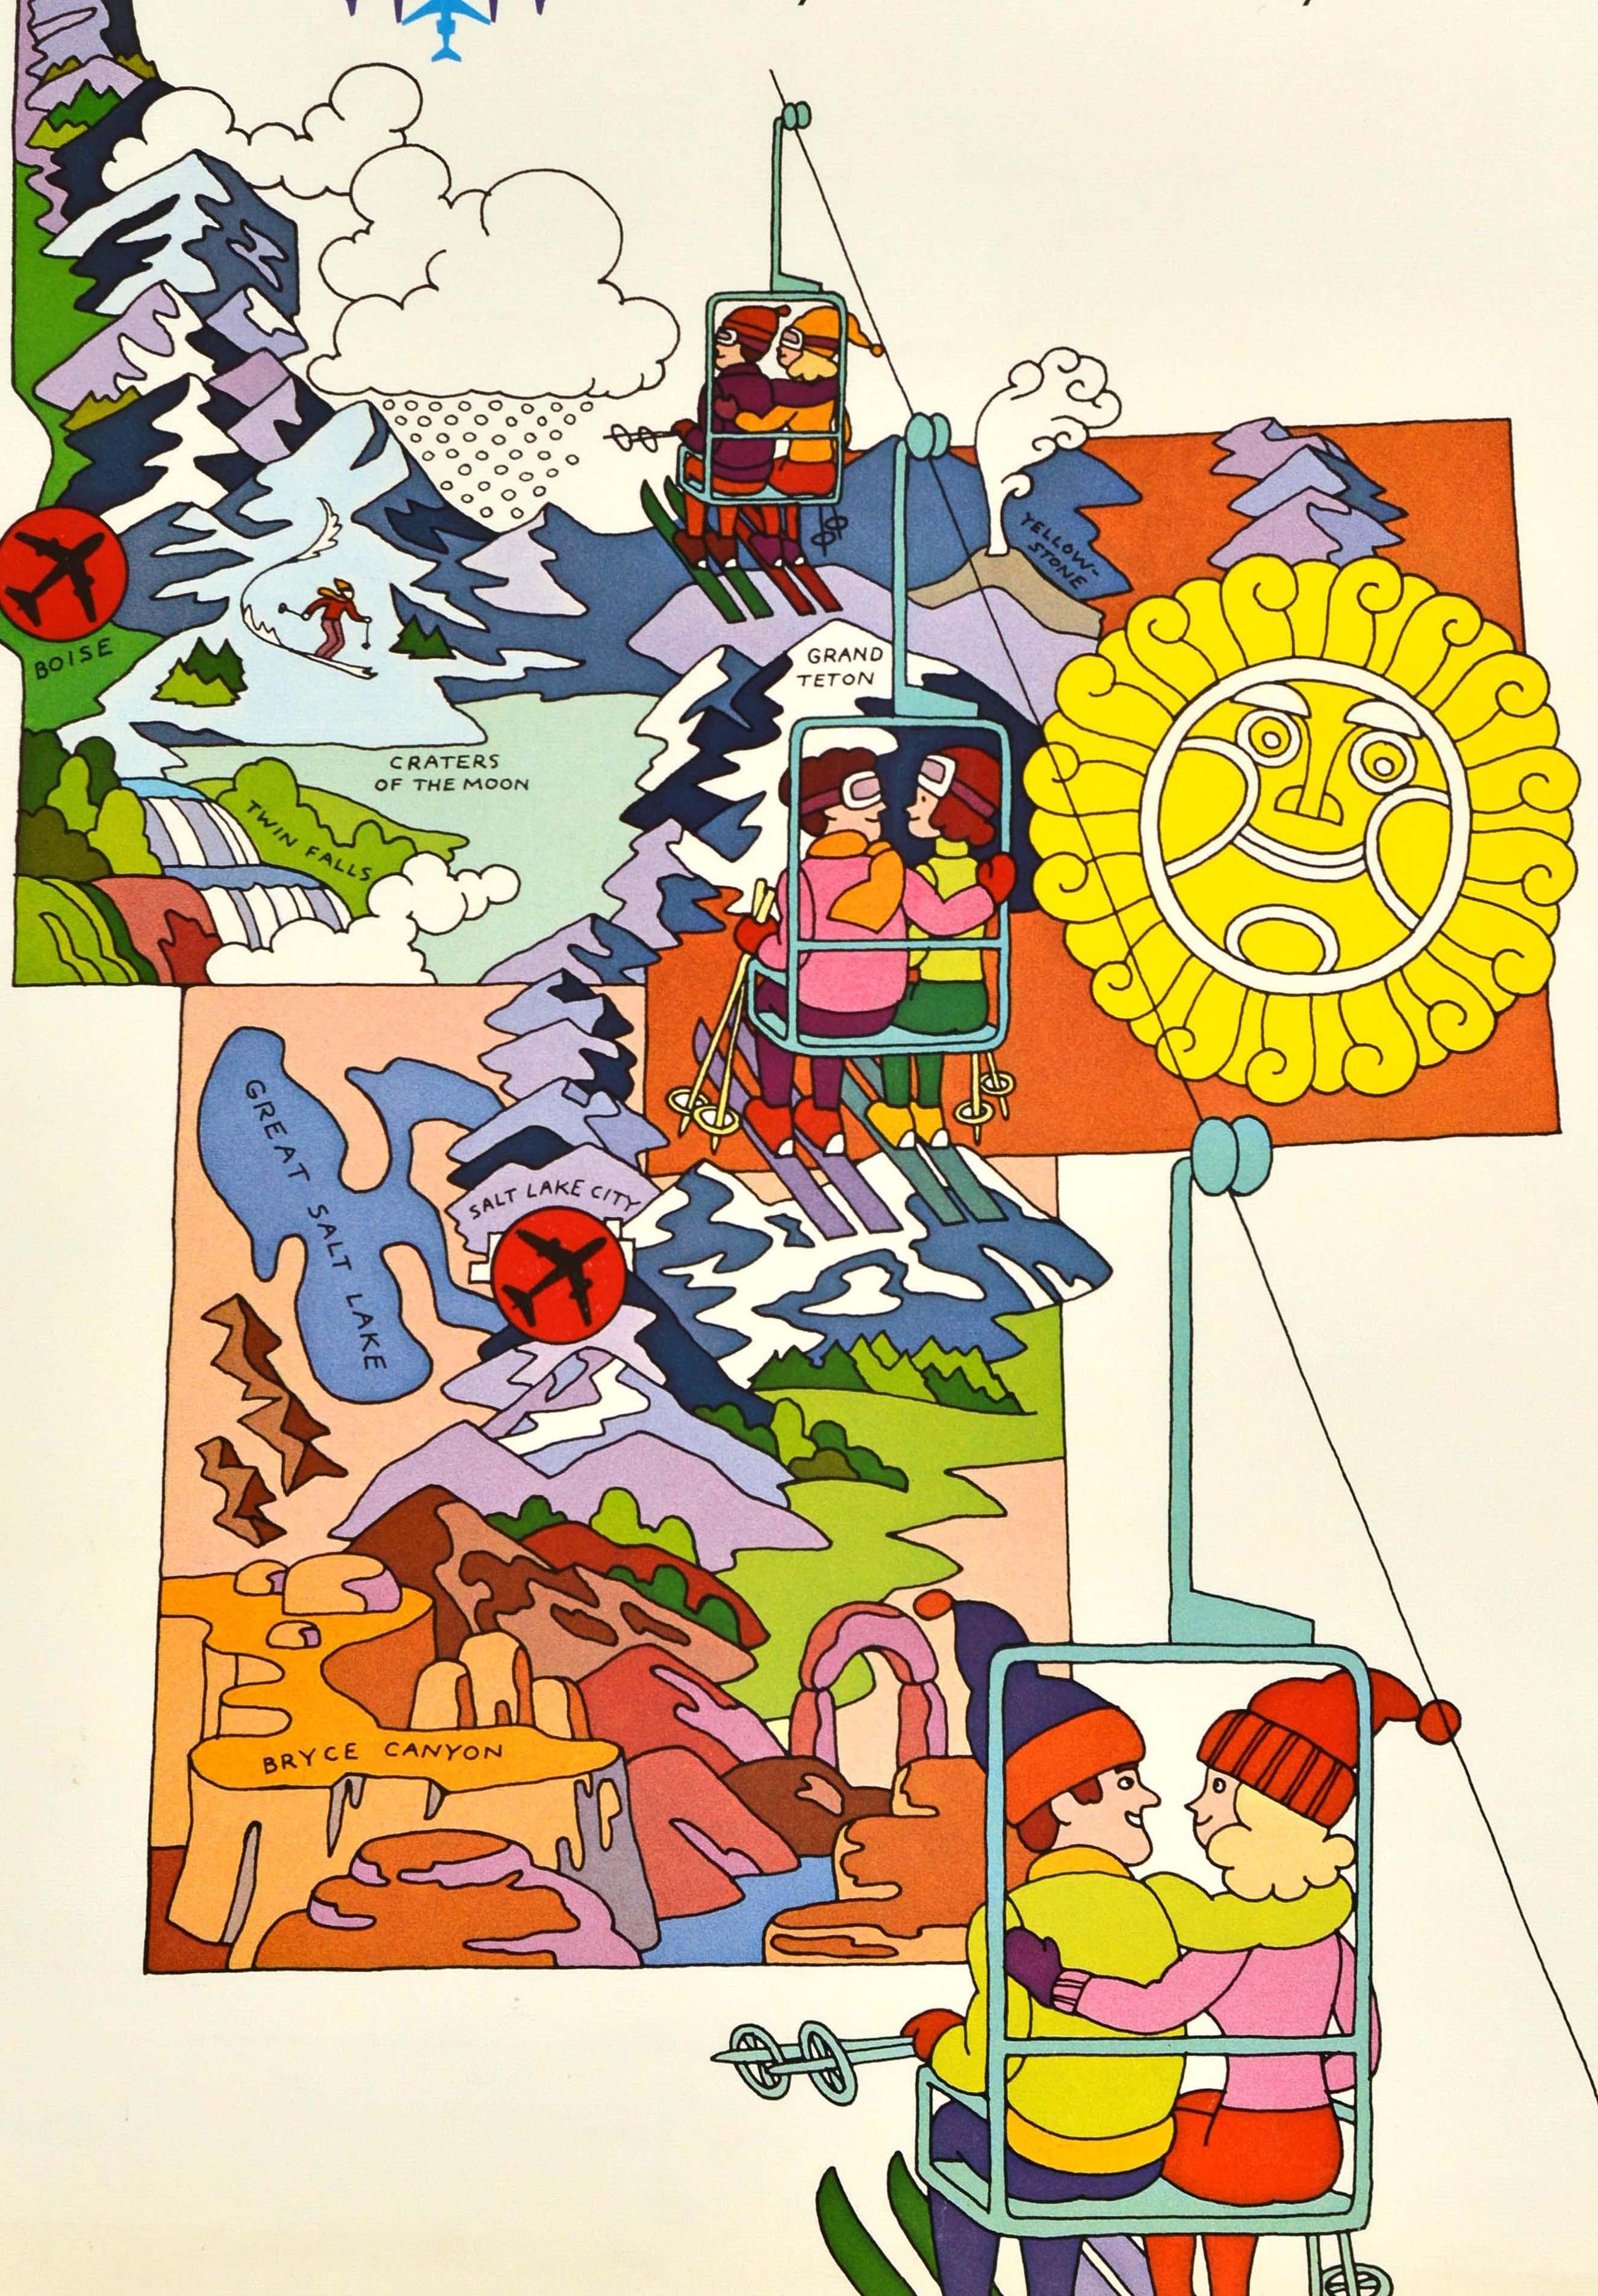 Original Vintage Wintersport-Reiseplakat - Ski The West von United Air Lines Utah Wyoming Idaho Your land is our land - mit einer lustigen Illustration, die Paare in einem Skilift zeigt, die einen Berg hinauffahren, mit bunten psychedelischen